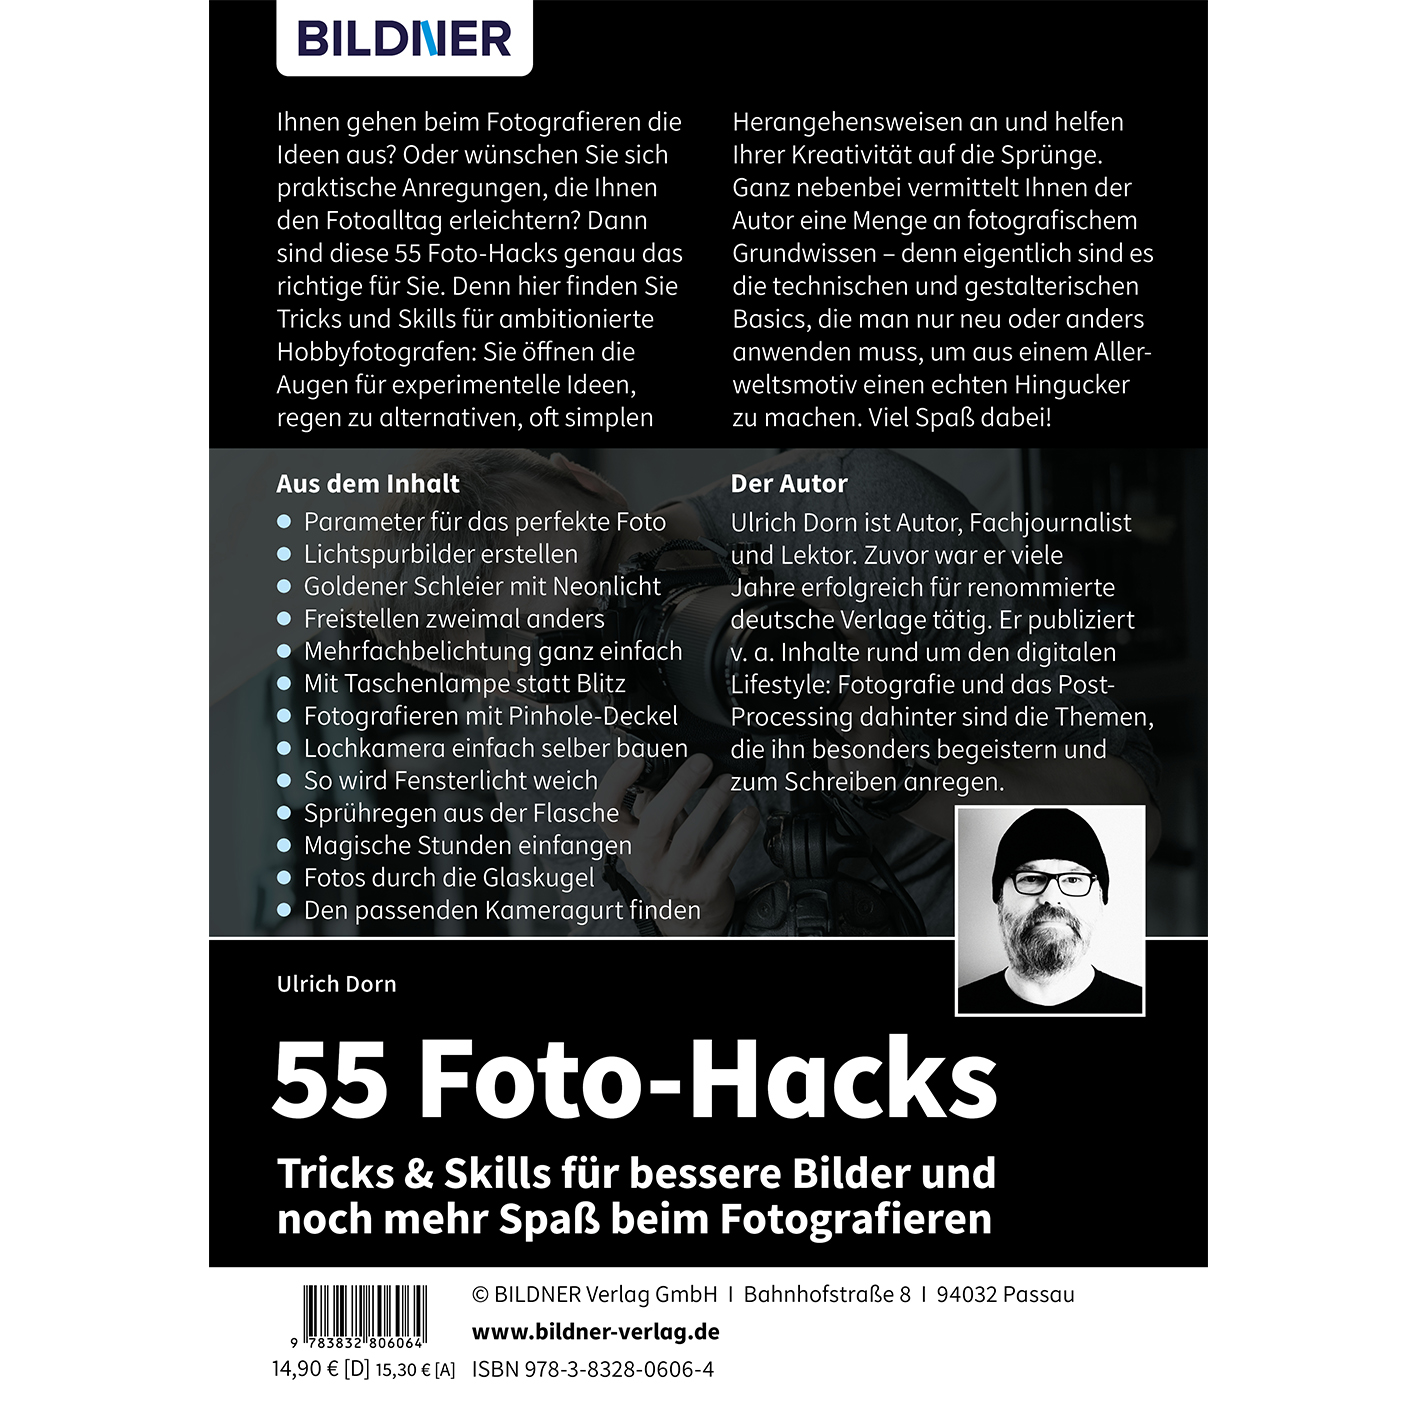 & Tricks und Fotografieren bessere Foto-Hacks Skills mehr noch 55 Spaß – Bilder für beim